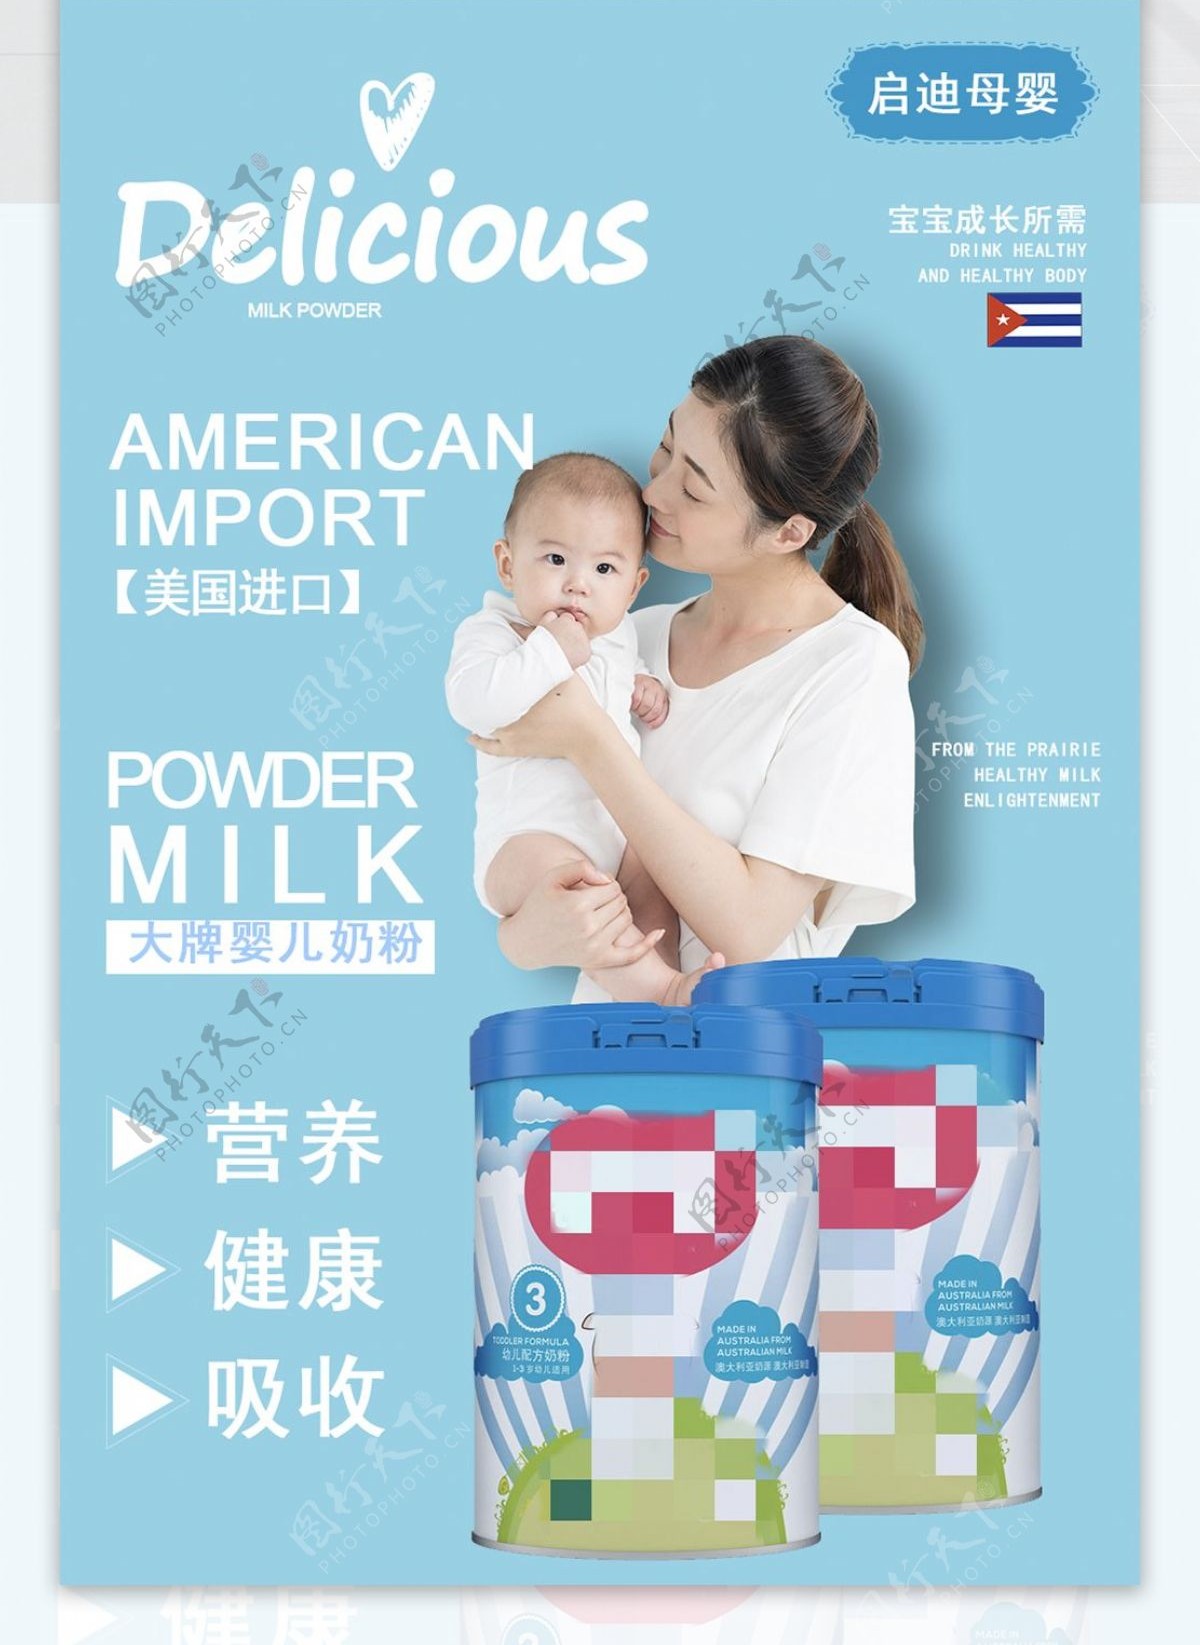 母婴用品奶粉海报